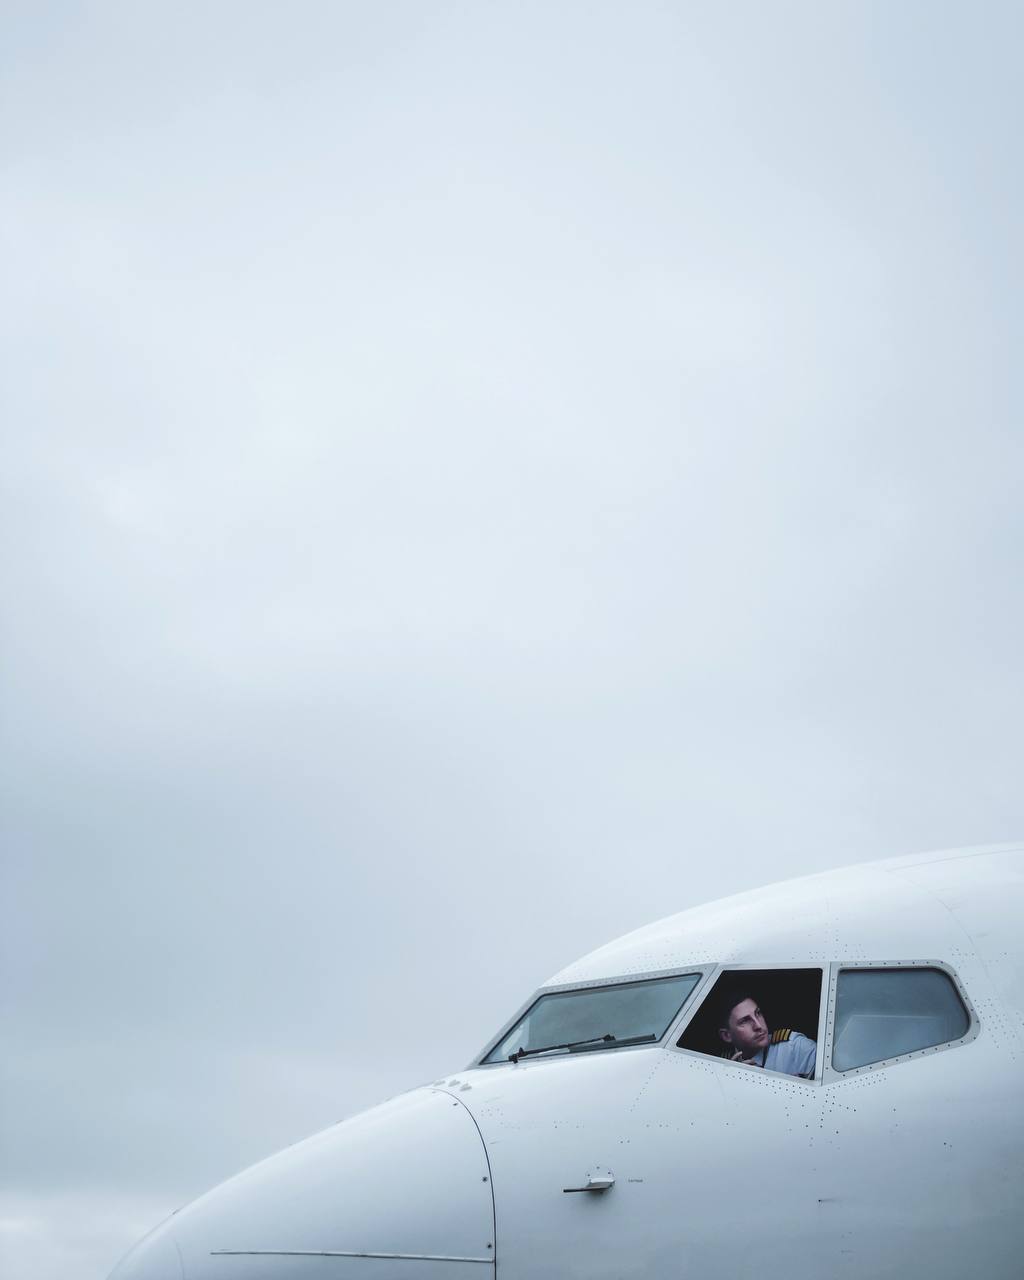 a person in a plane